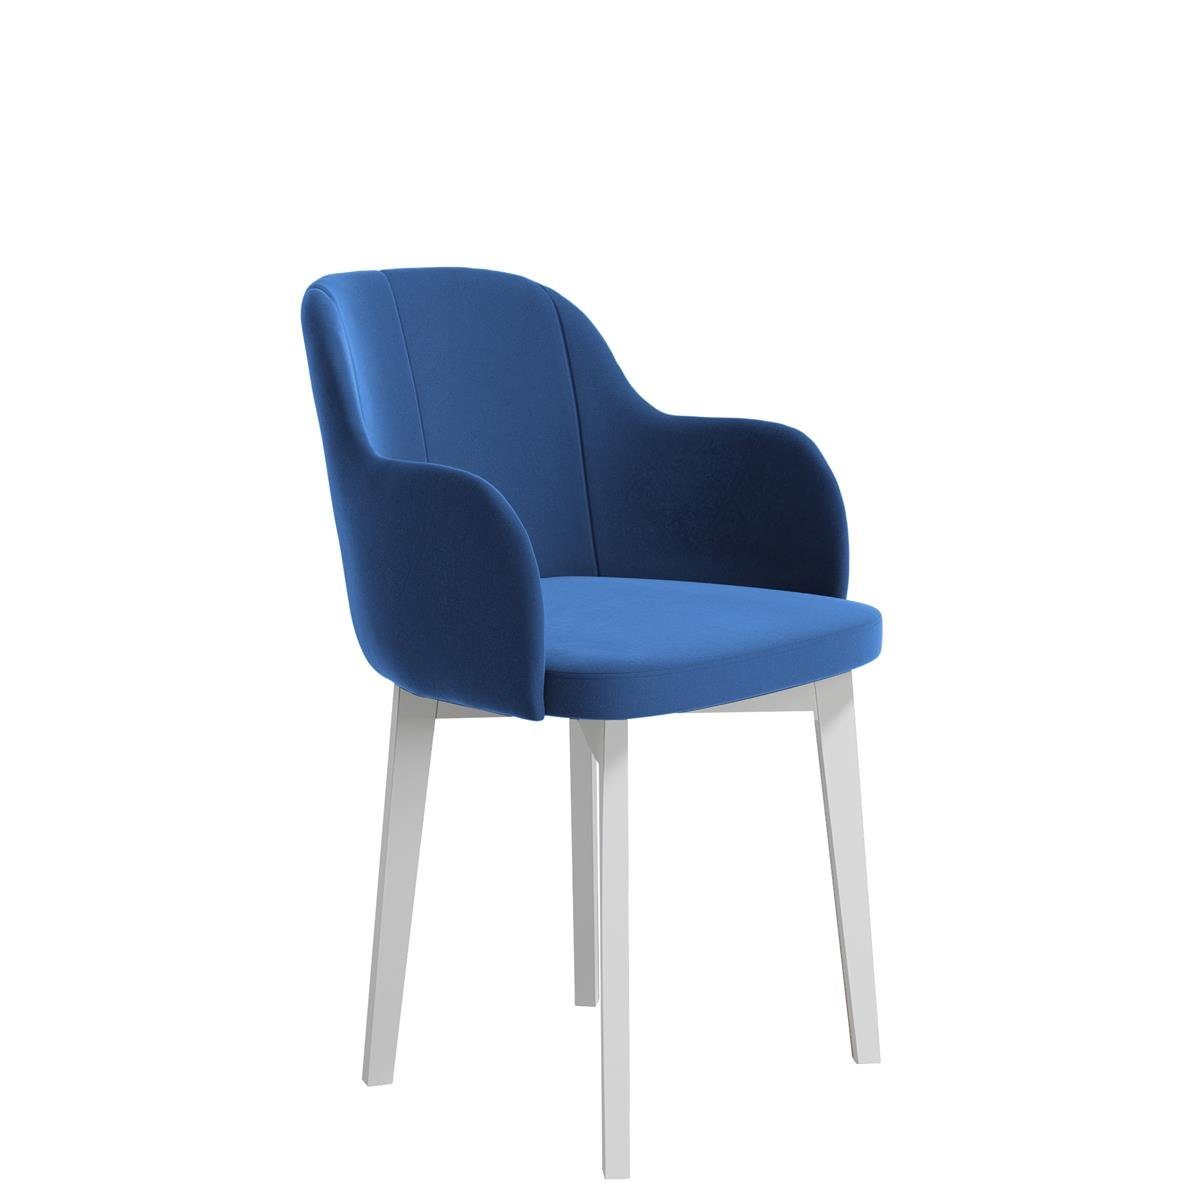 Beautysofa Polsterstuhl Relax (aus Veloursstoff), Stuhl für Wohnzimmer oder Büro, Relaxstuhl mit Holzbeine Blau (riviera 81)